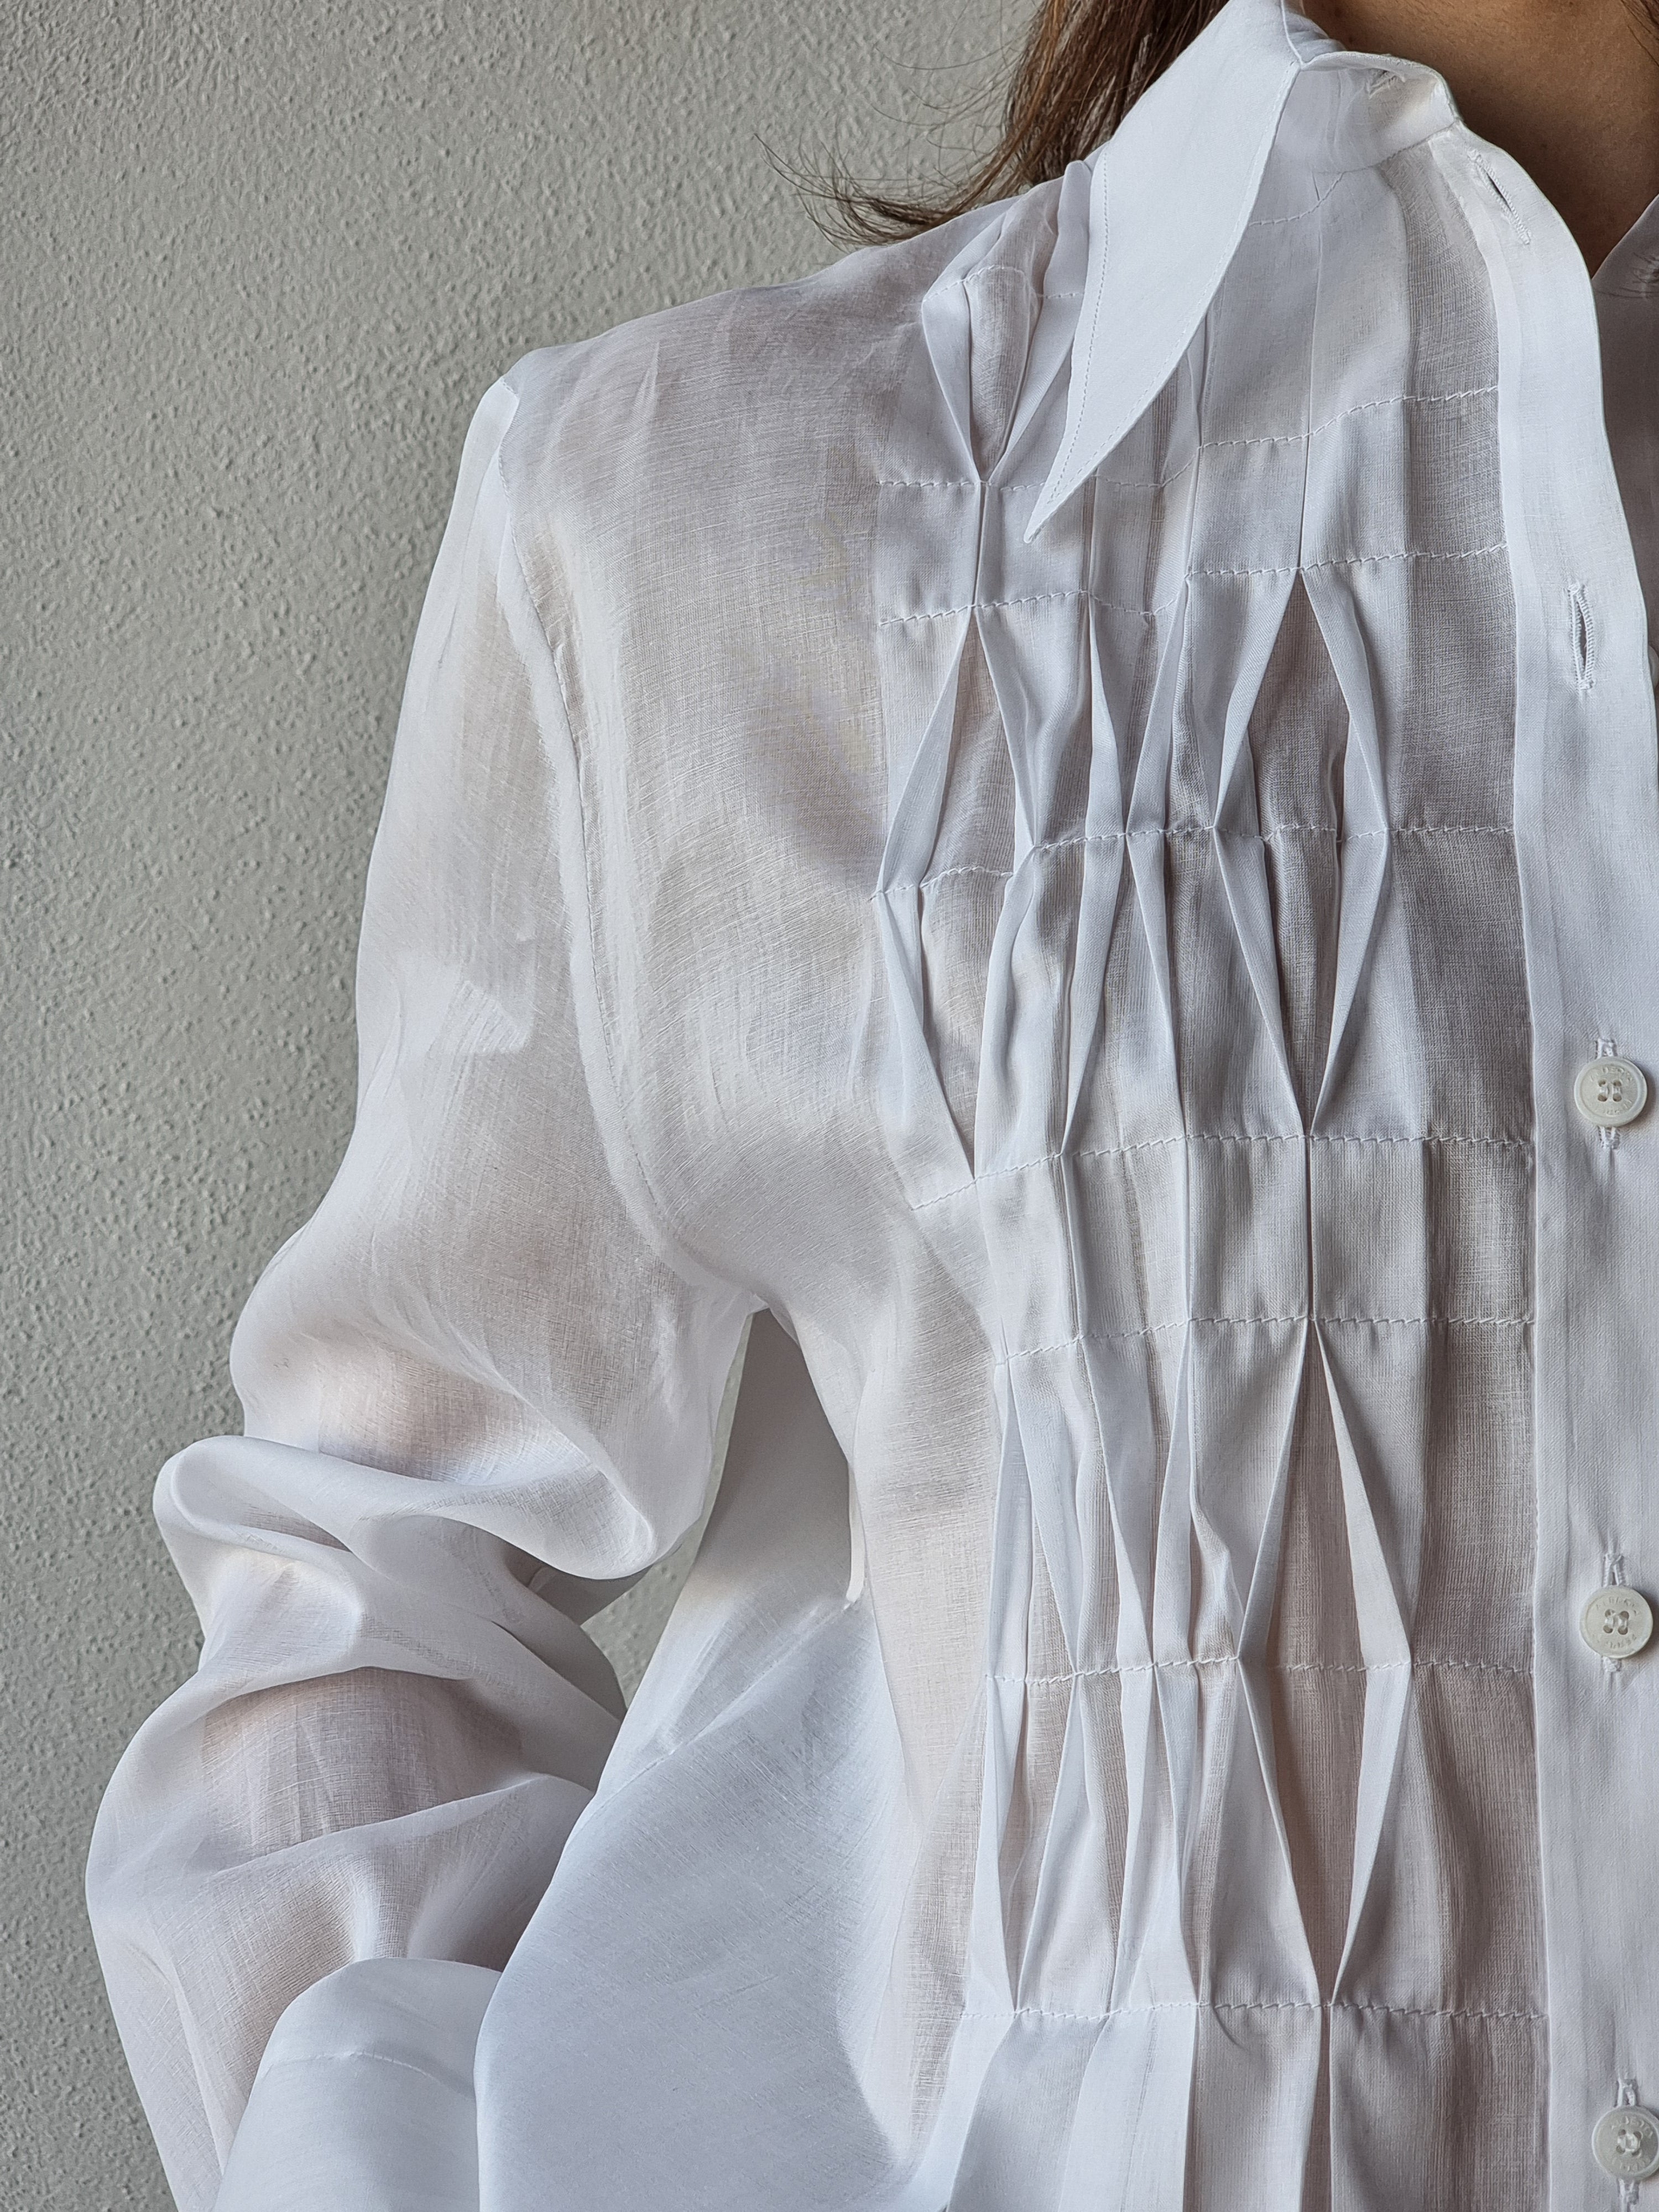 Alberta Ferretti – Camicia bianca origami piatti